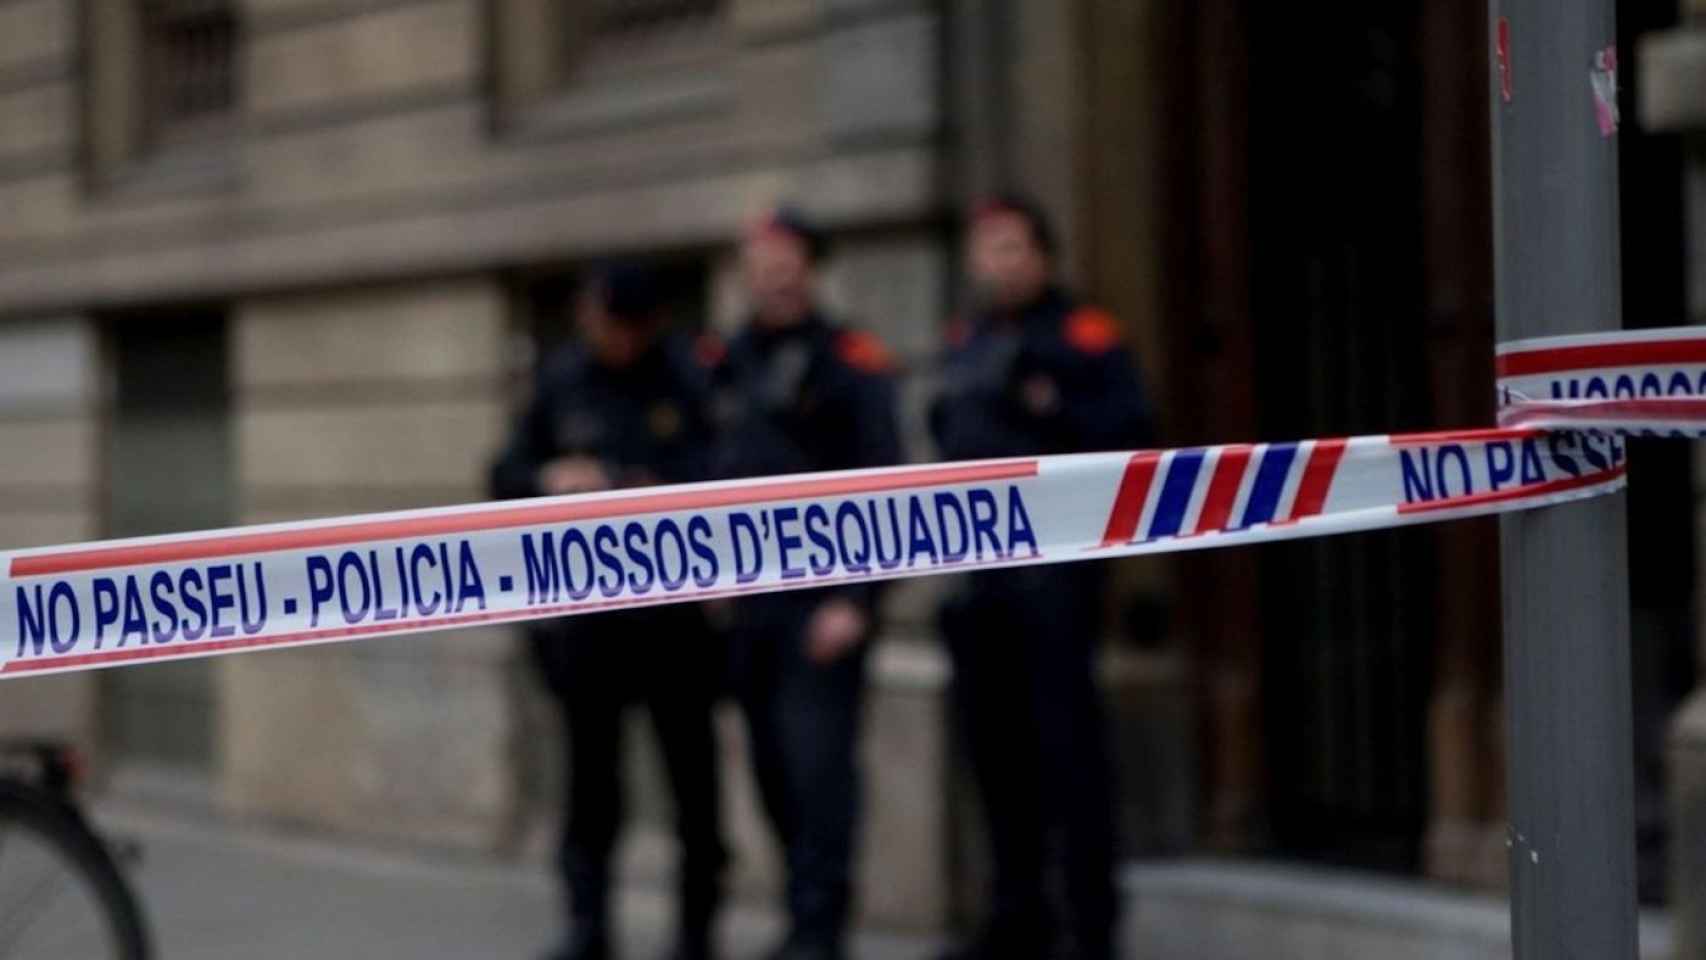 Cordón policial de Mossos d'Esquadra por un asesinato machista en la provincia de Barcelona en una imagen de archivo